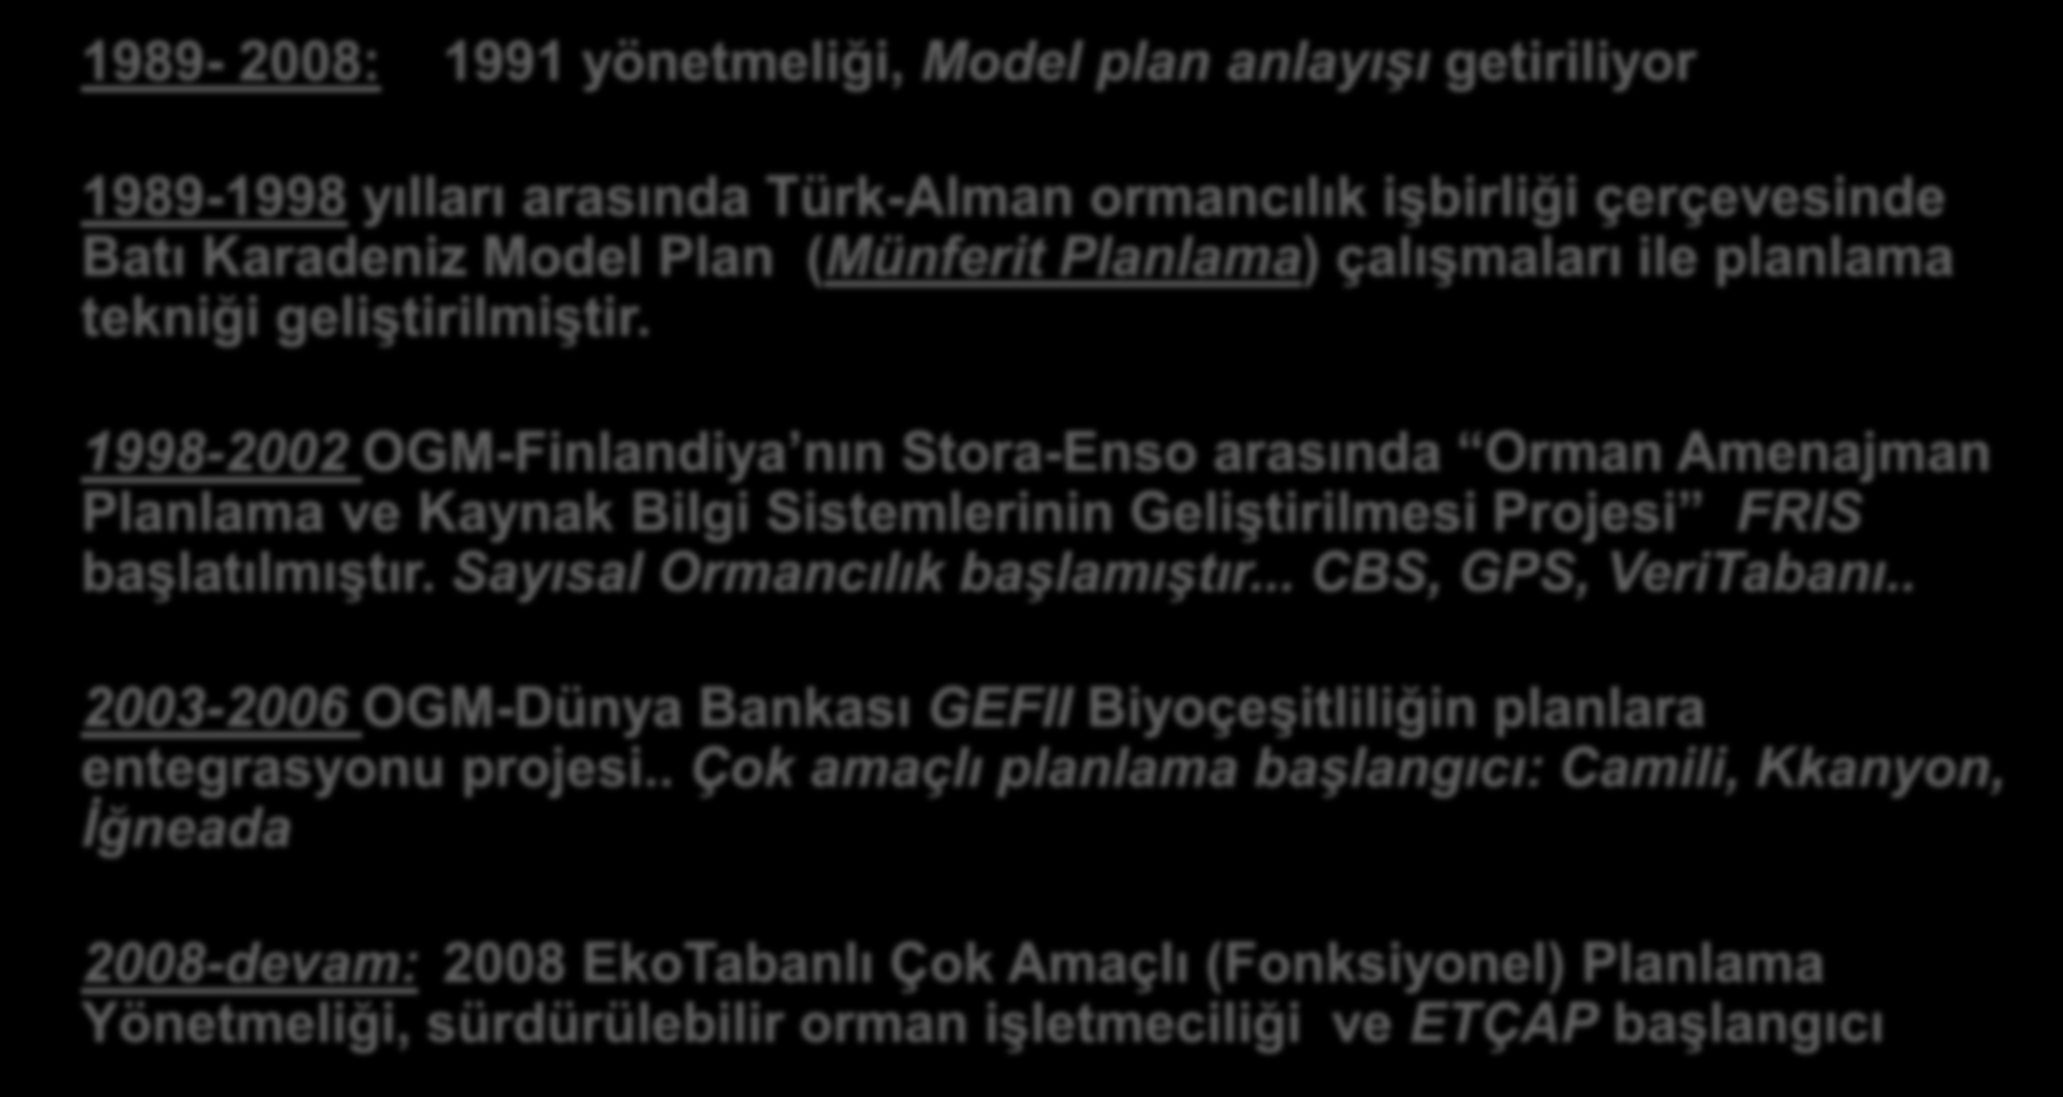 Amenajmanın Tarihçesi -III 1989-2008: 1991 yönetmeliği, Model plan anlayışı getiriliyor 1989-1998 yılları arasında Türk-Alman ormancılık işbirliği çerçevesinde Batı Karadeniz Model Plan (Münferit